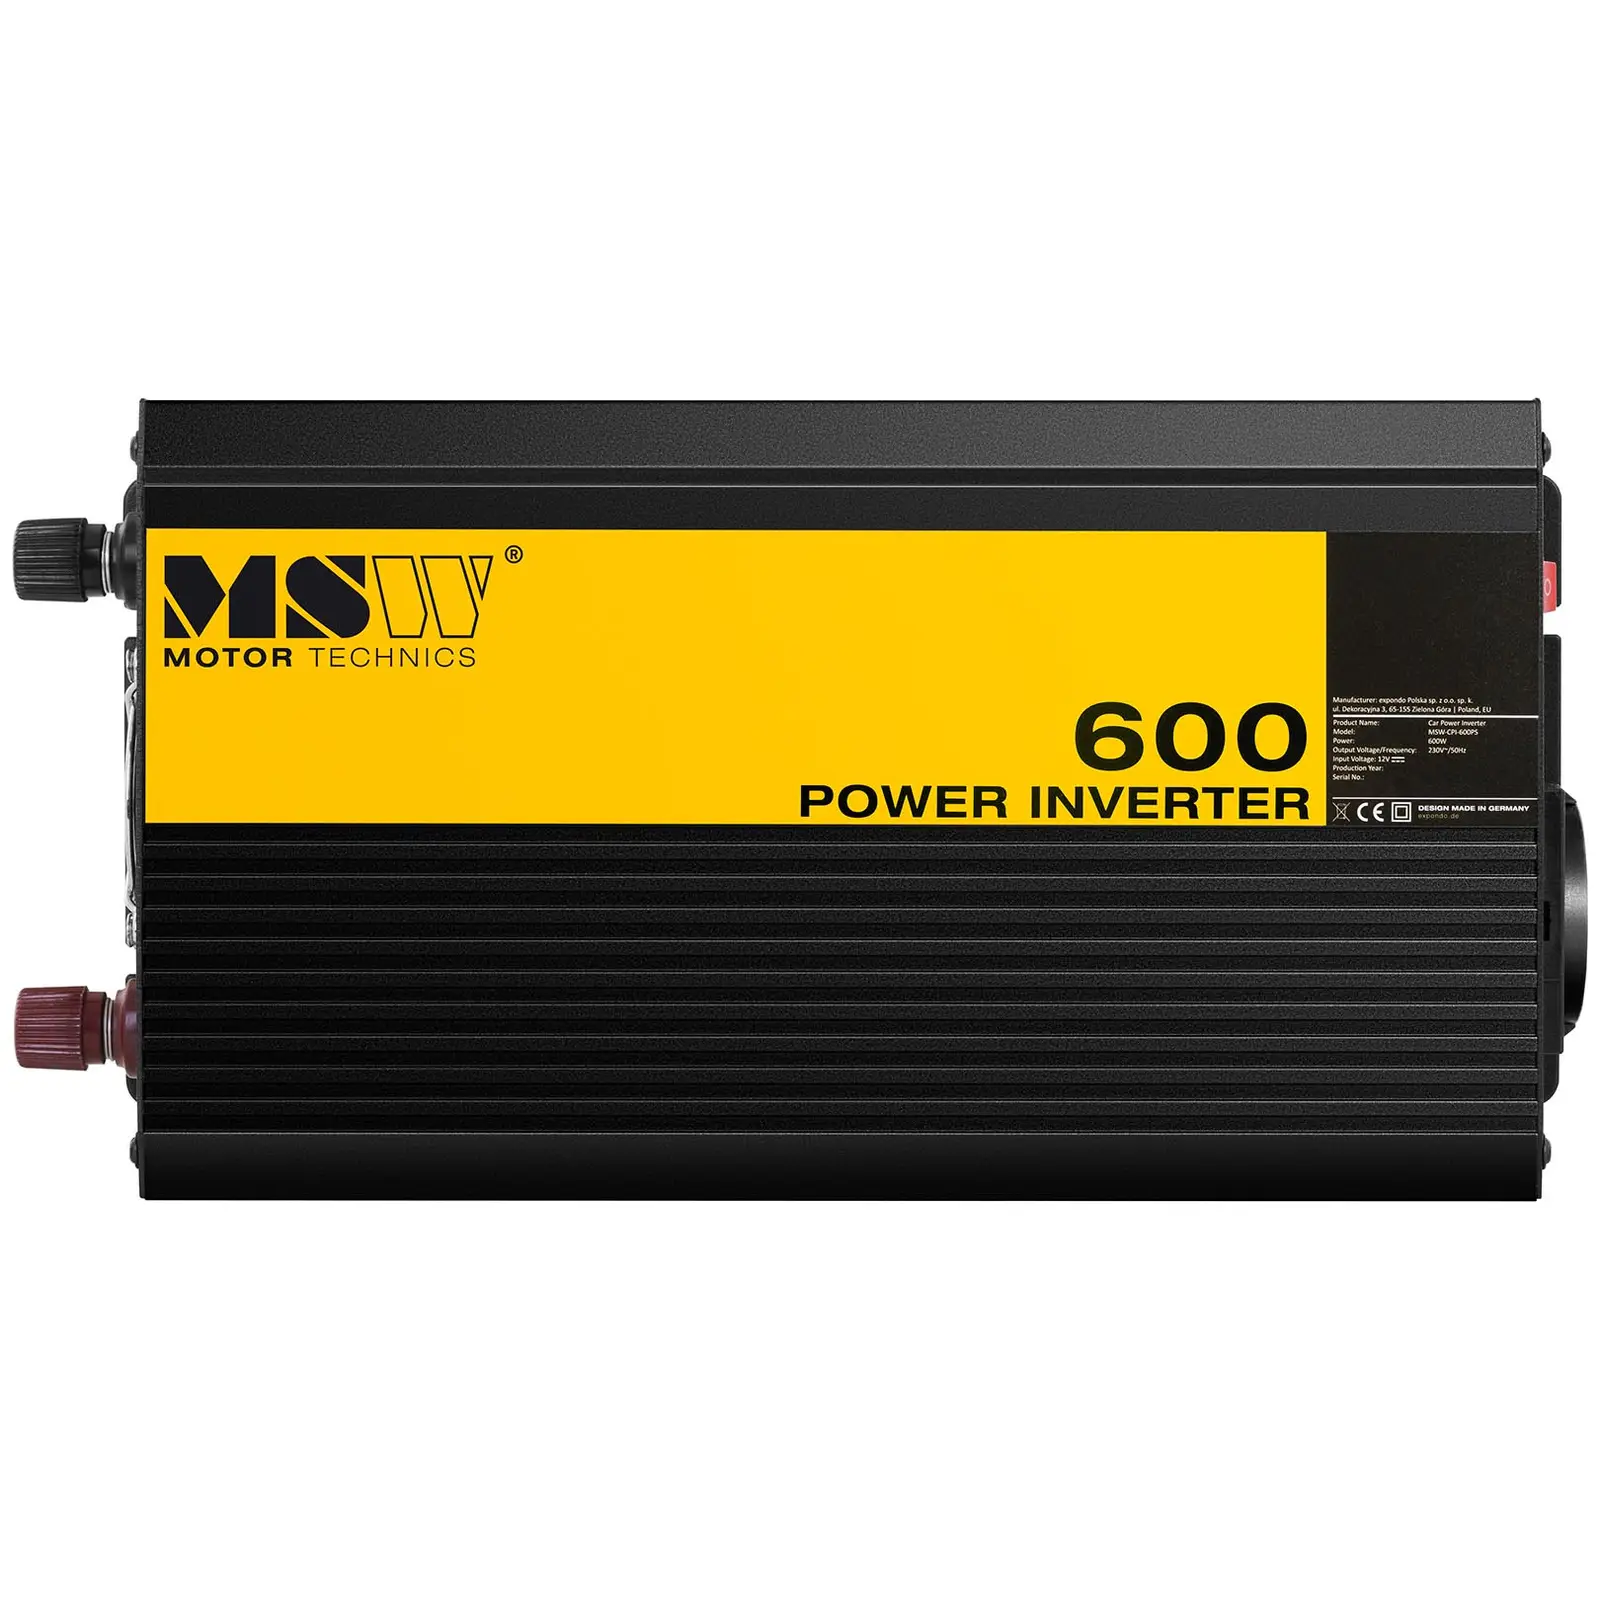 Power inverter - Pure Sine - 600 W